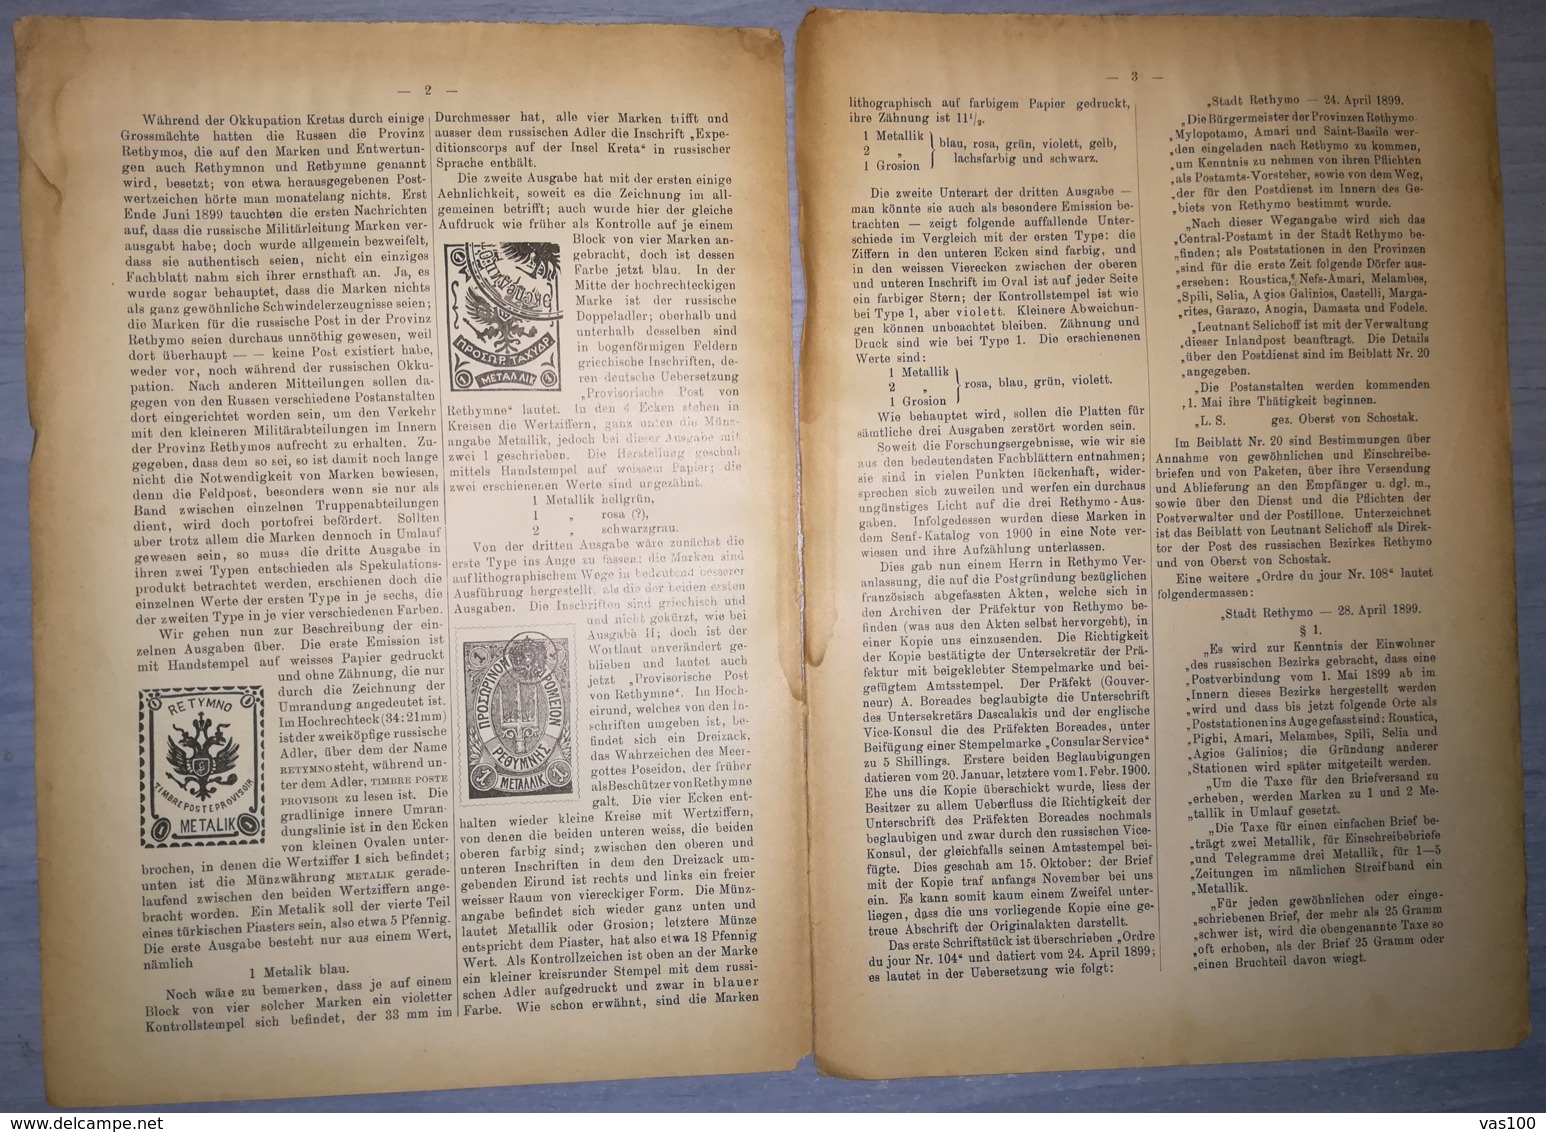 ILLUSTRATED STAMP JOURNAL-ILLUSTRIERTES BRIEFMARKEN JOURNAL MAGAZINE SUPPLEMENT, COLLECTORS, NR 12, 1902, GERMANY - German (until 1940)